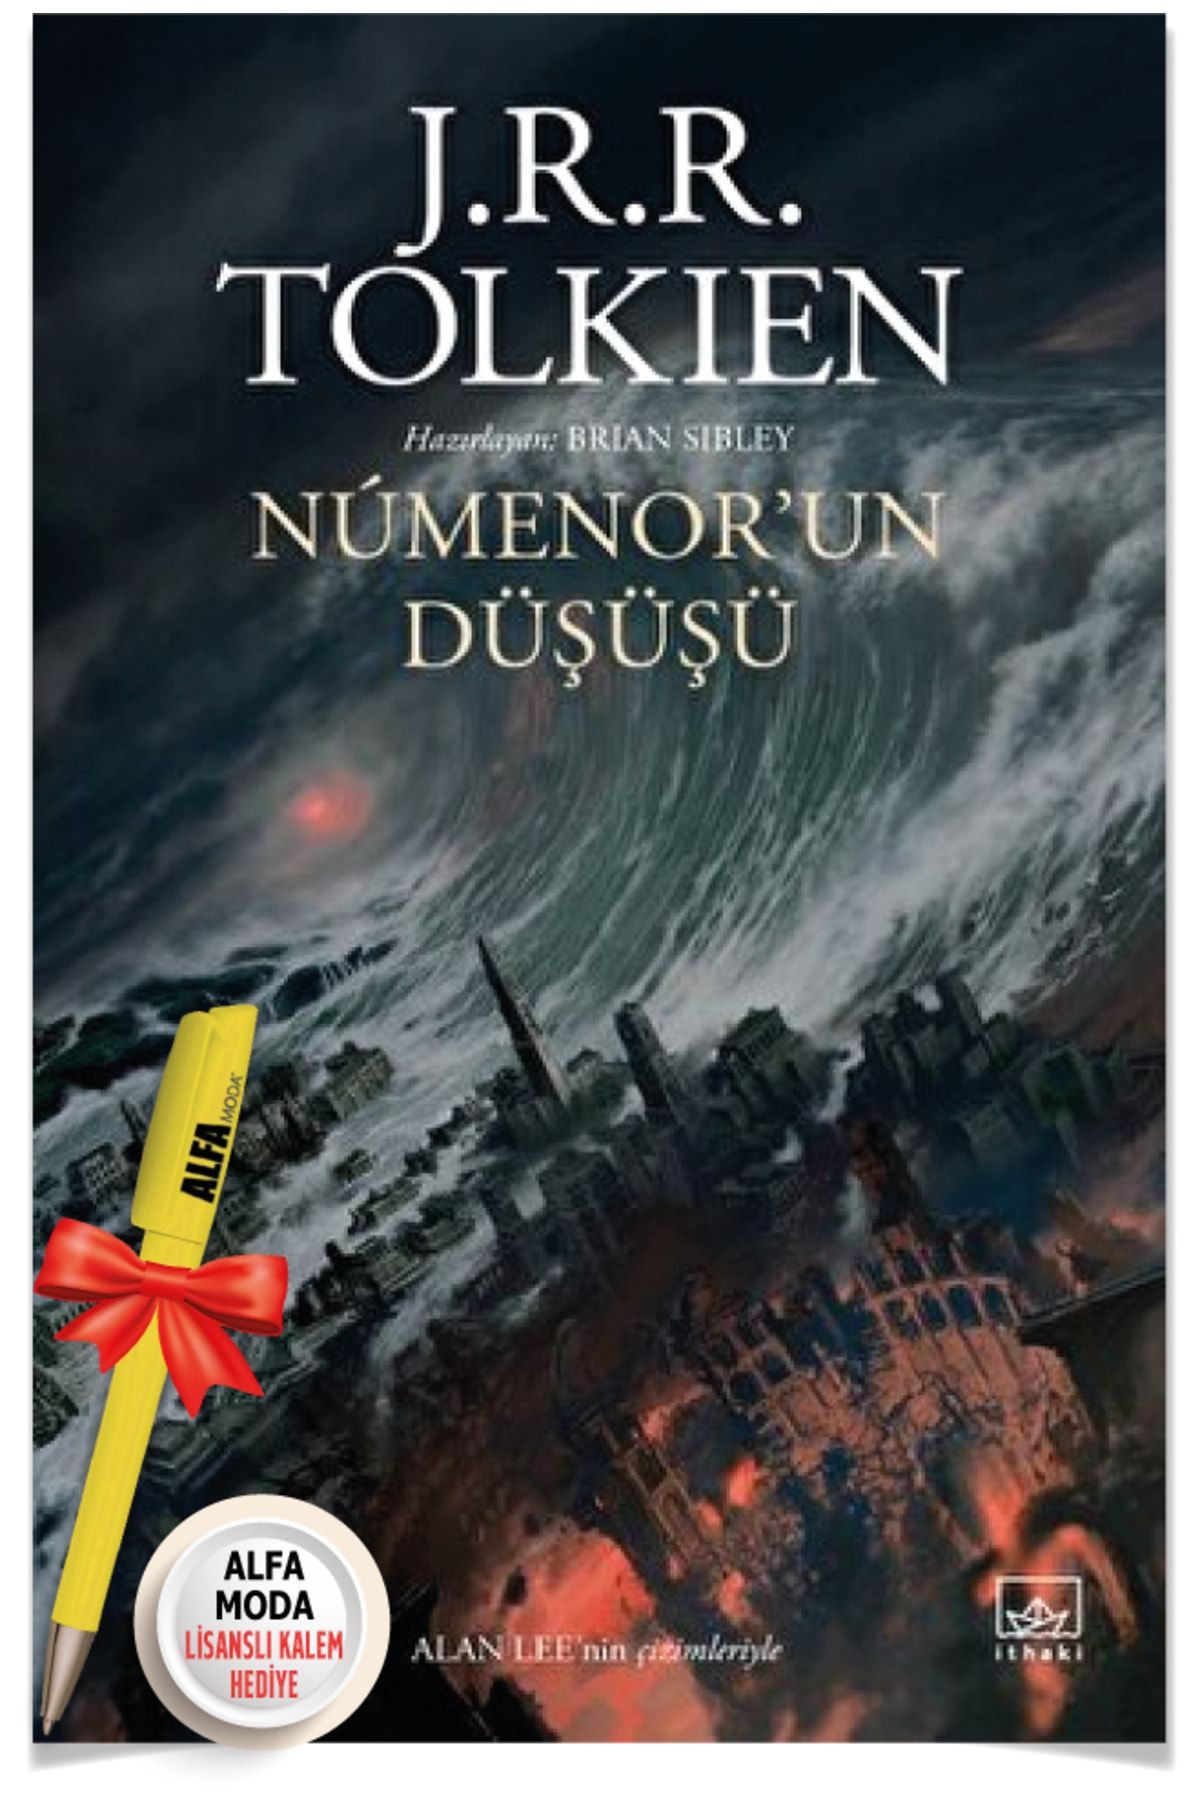 İthaki Yayınları Numenor’un Düşüşü (J. R. R. Tolkien) + Moda Lisanslı Kalem Hediye - İthaki Yayınları